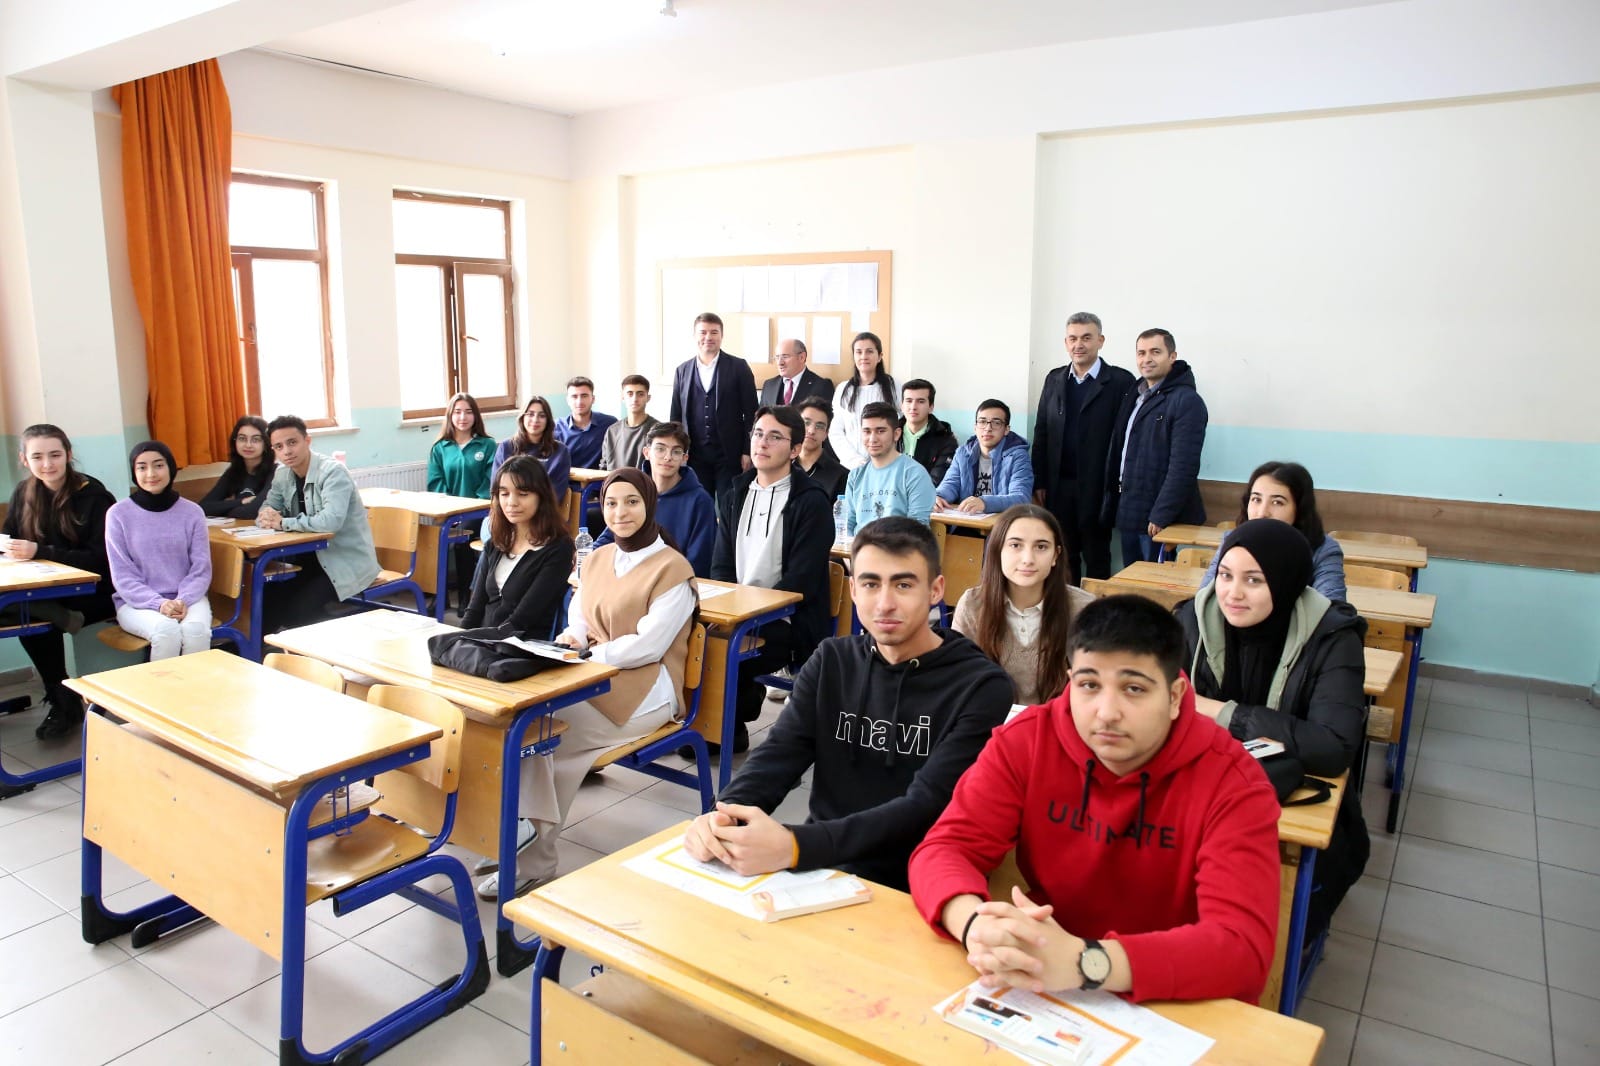 Aksaray’da 87 Bin Öğrenci 6 Bin 500 Öğretmen Yarıyıl Tatiline Merhaba dedi